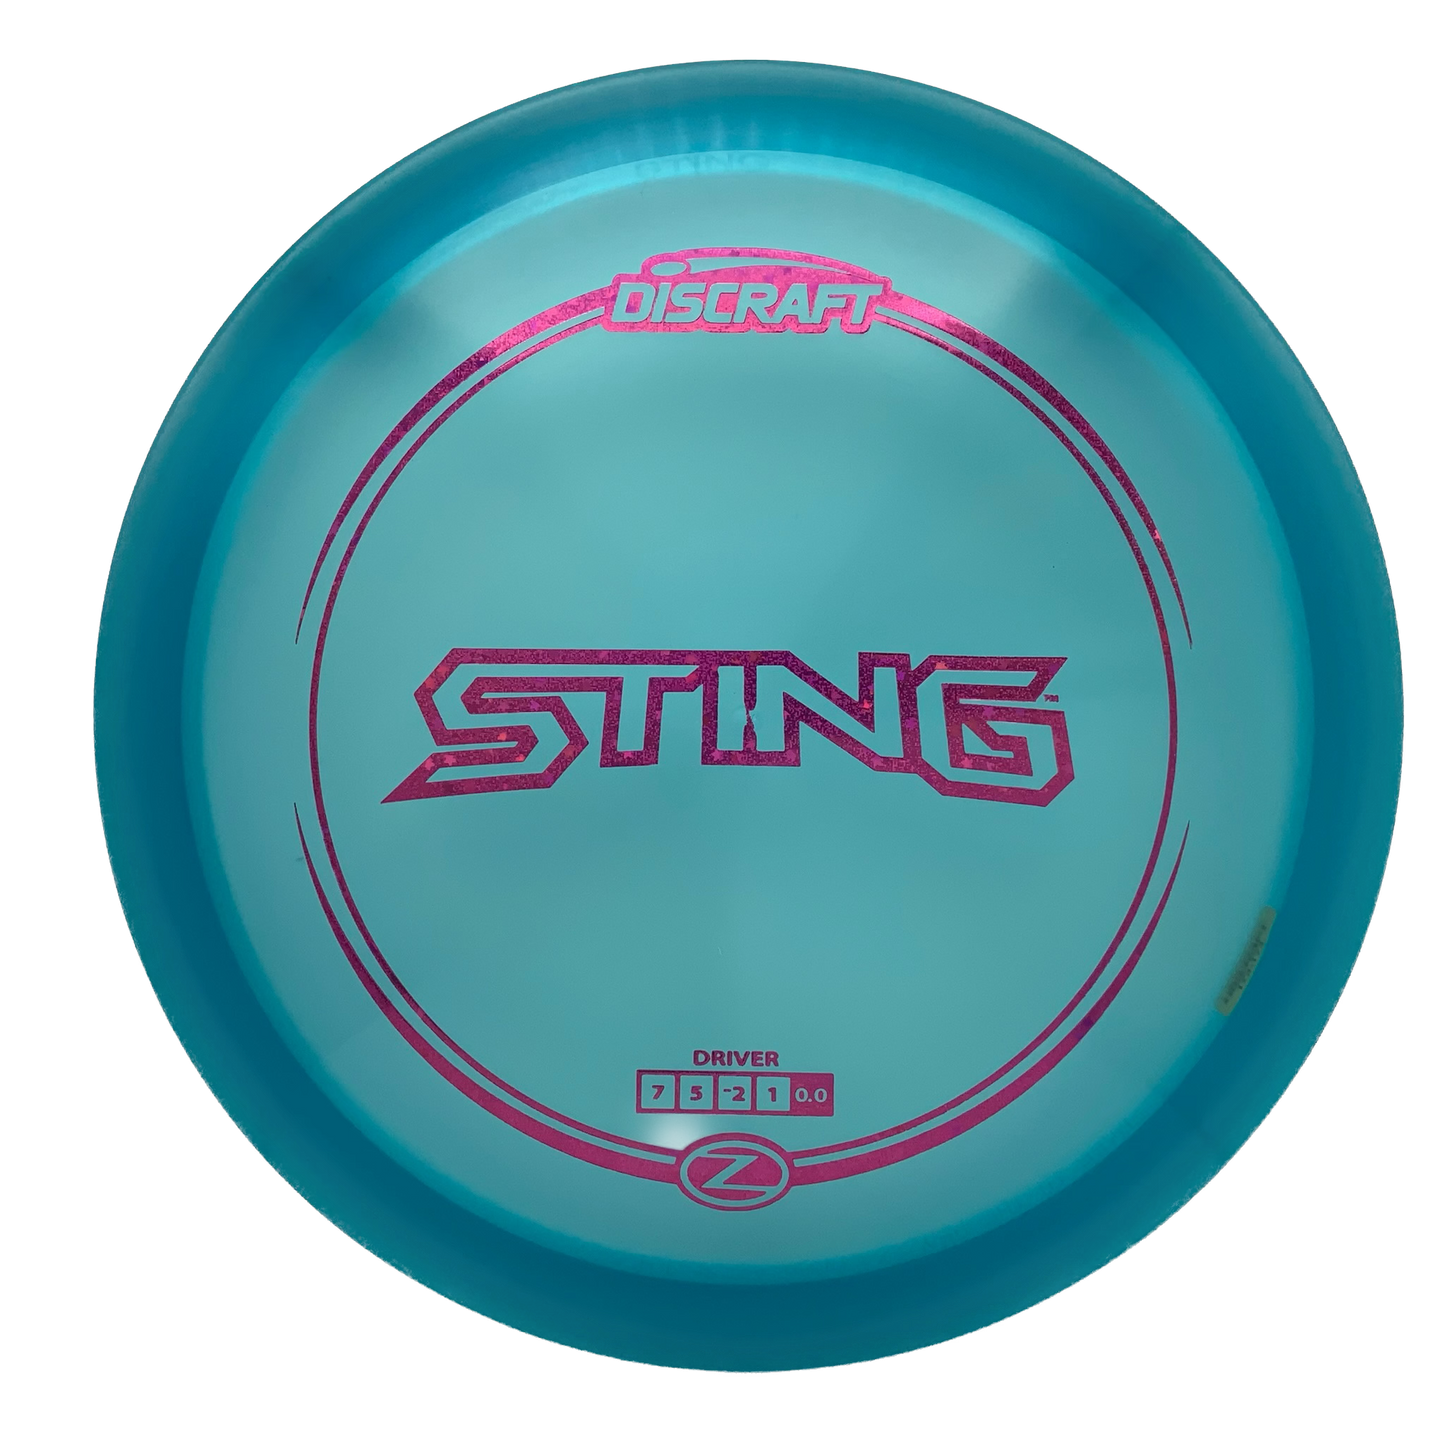 Discraft Sting - Astro Discs TX - Houston Disc Golf